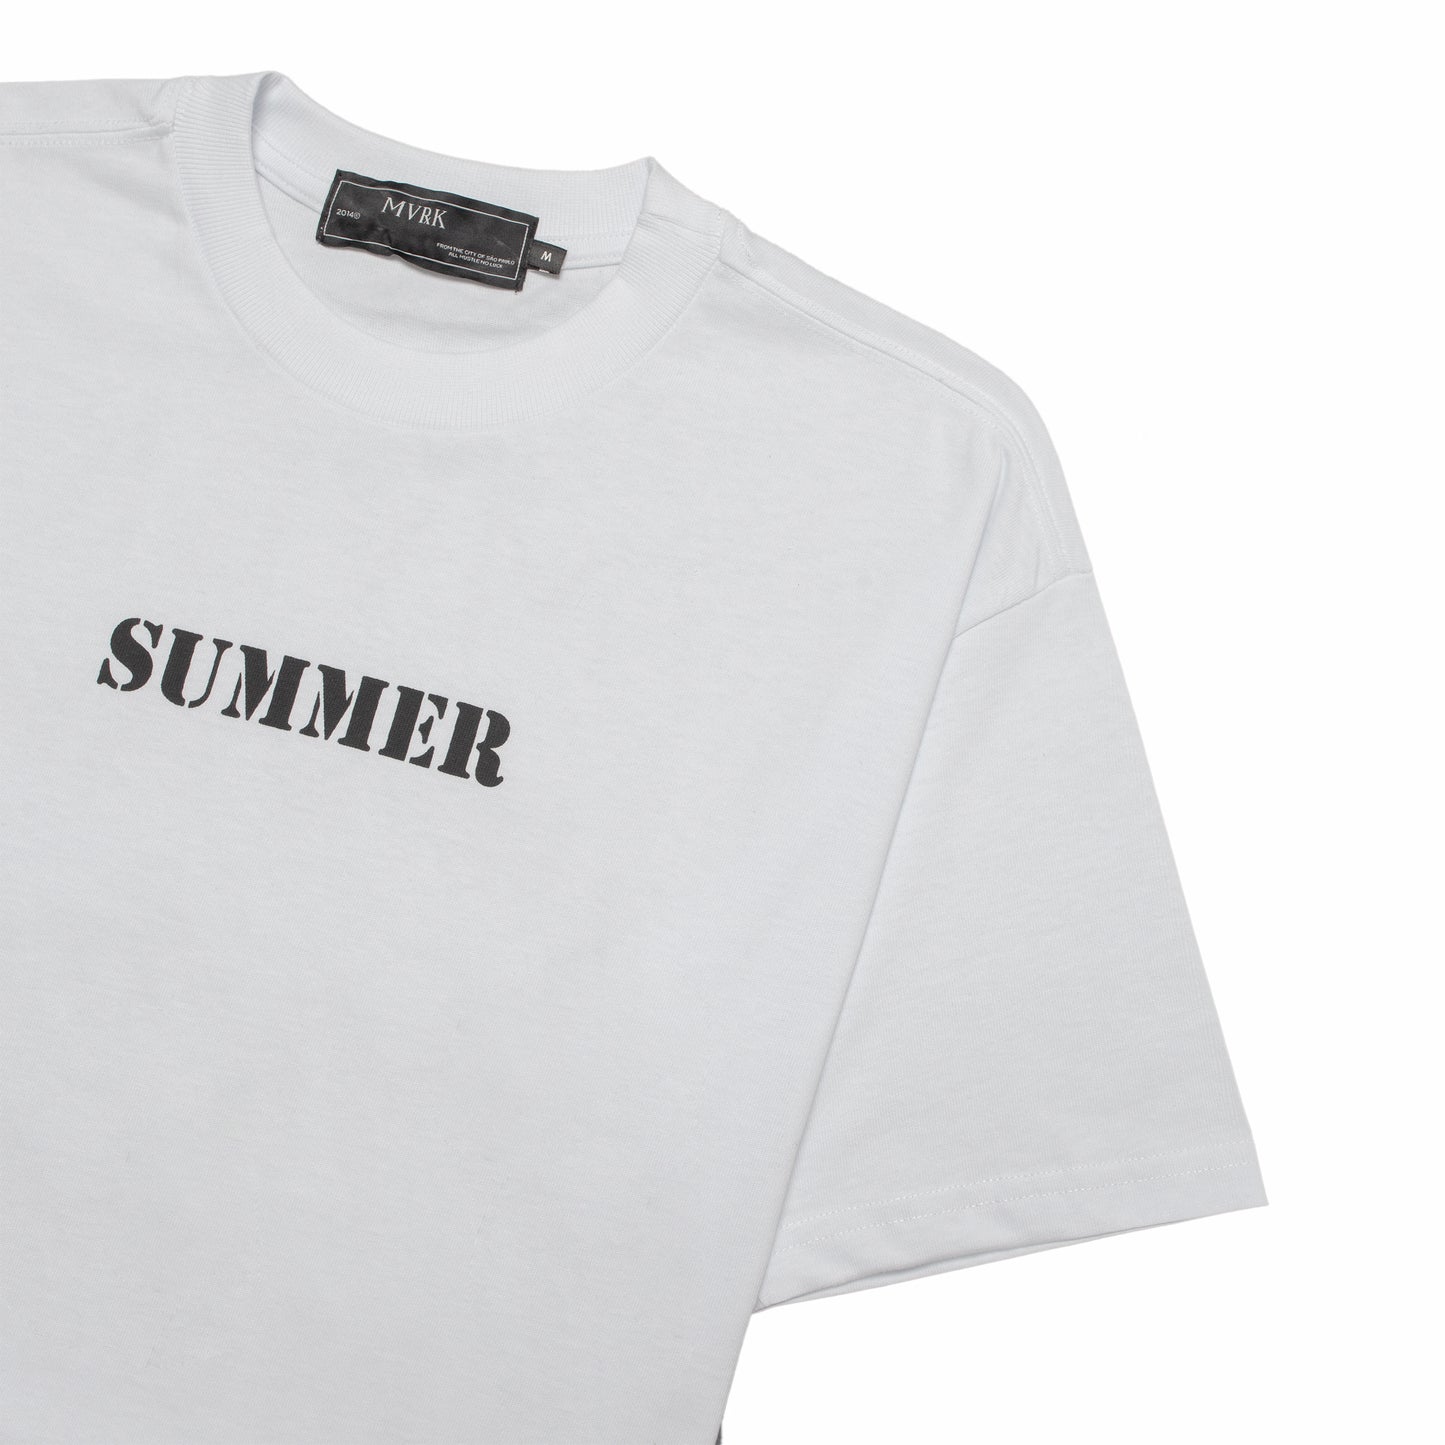 Camiseta Summer MVRK